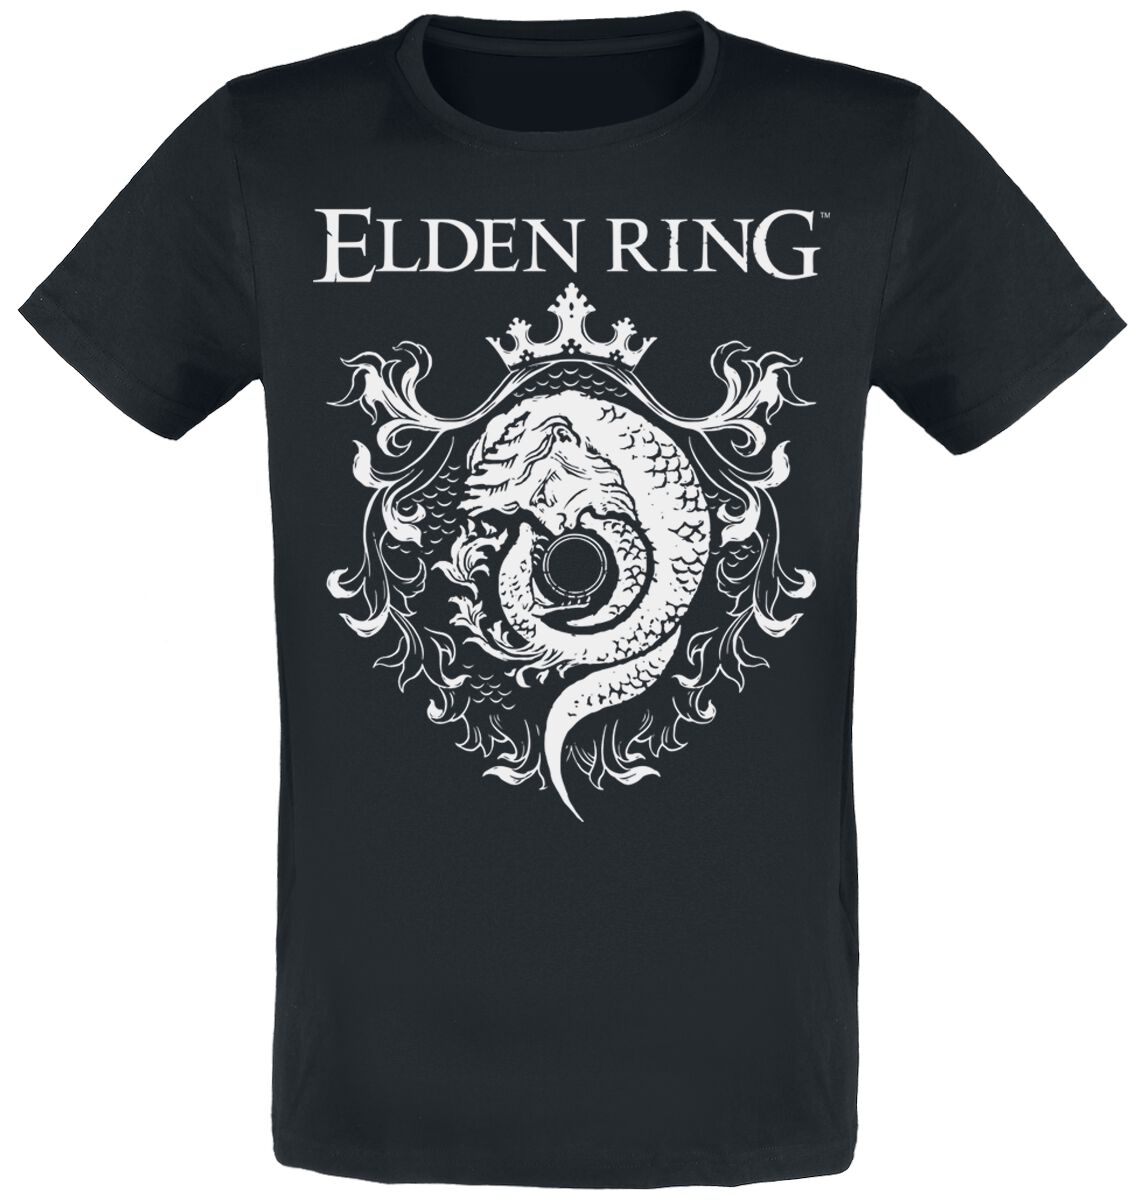 Elden Ring - Gaming T-Shirt - Crest - S bis XXL - für Männer - Größe XXL - schwarz  - EMP exklusives Merchandise!